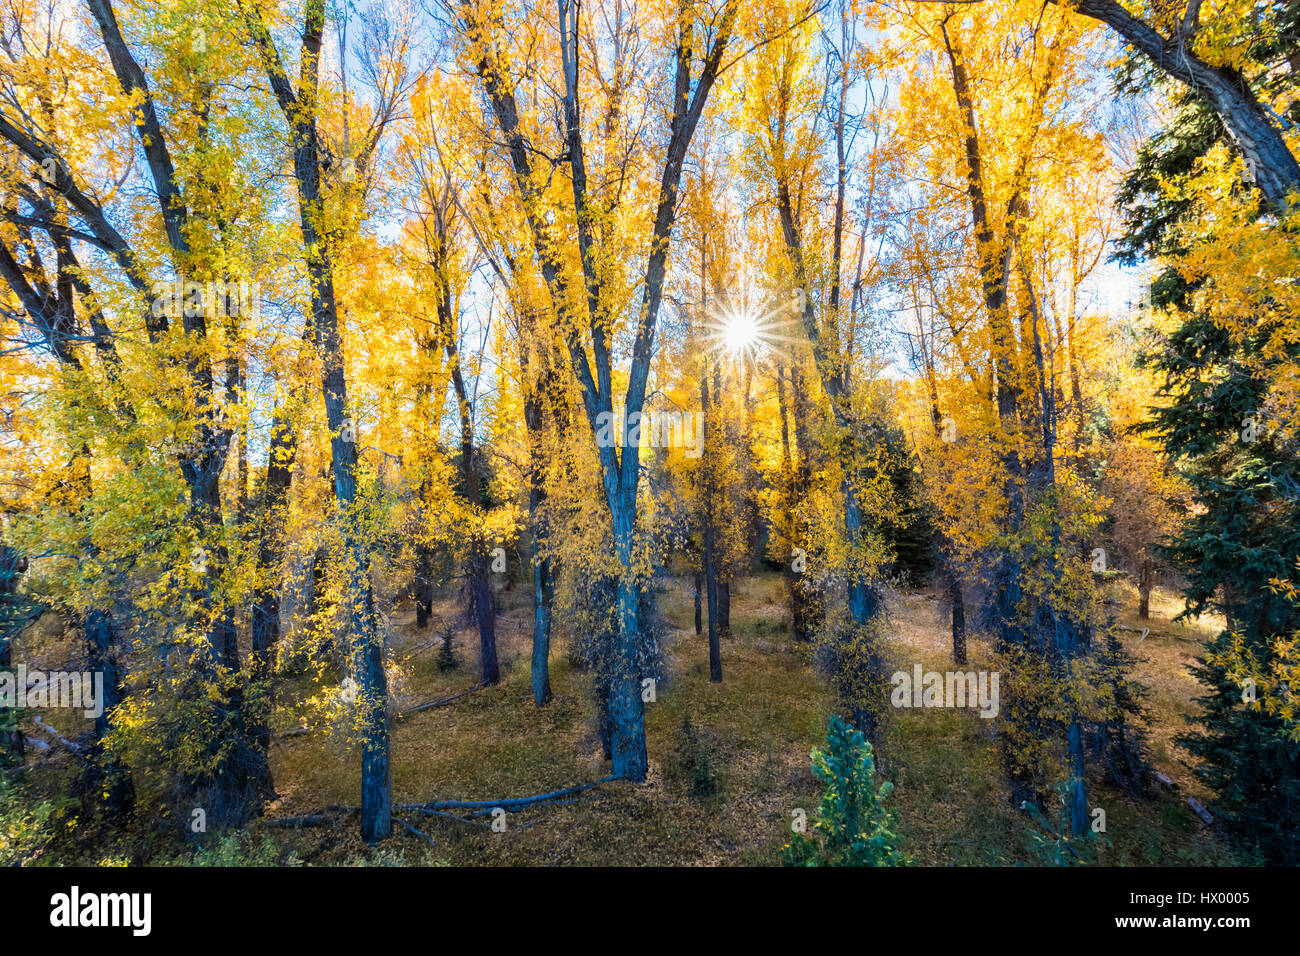 USA, Wyoming, Rocky Mountains, Grand Teton National Park, aspens in autumn Stock Photo